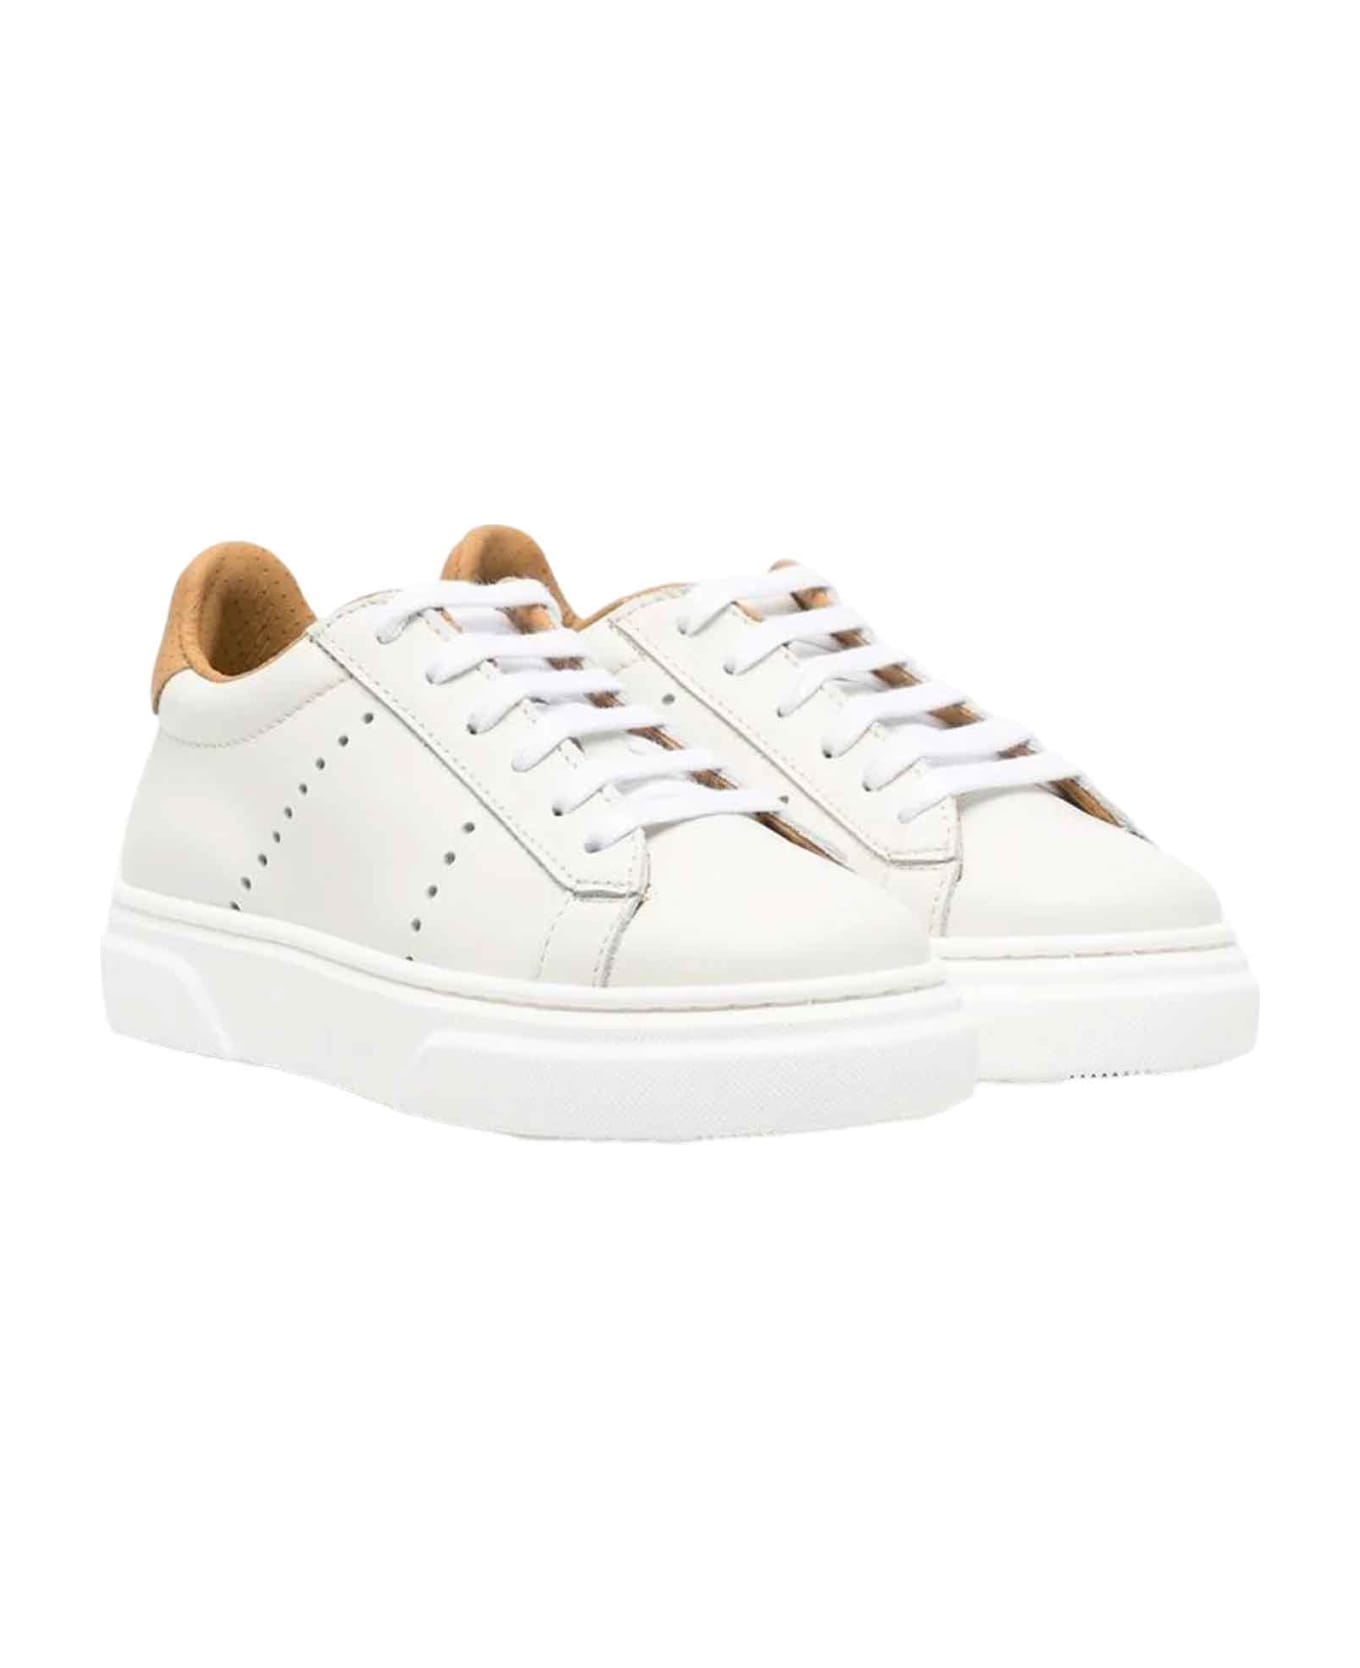 Eleventy White Sneakers Unisex - Bianco シューズ